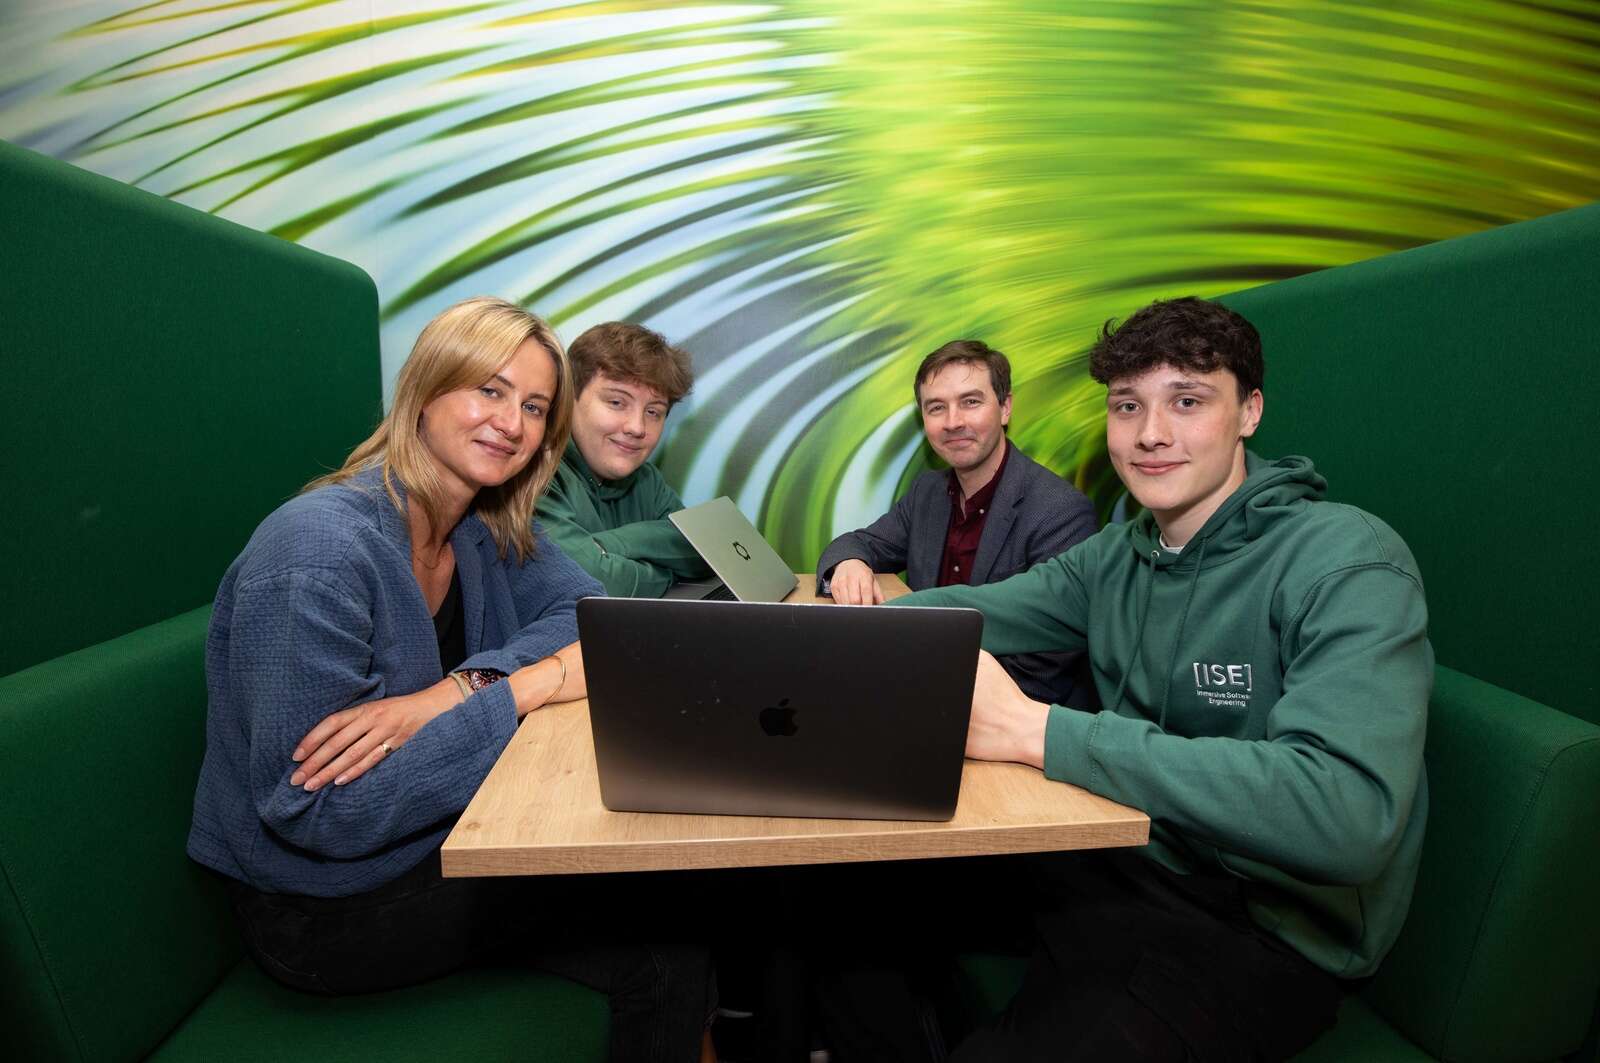 Dogpatch Labs et l’Université de Limerick s’associent pour créer un vivier de talents via des stages en start-up